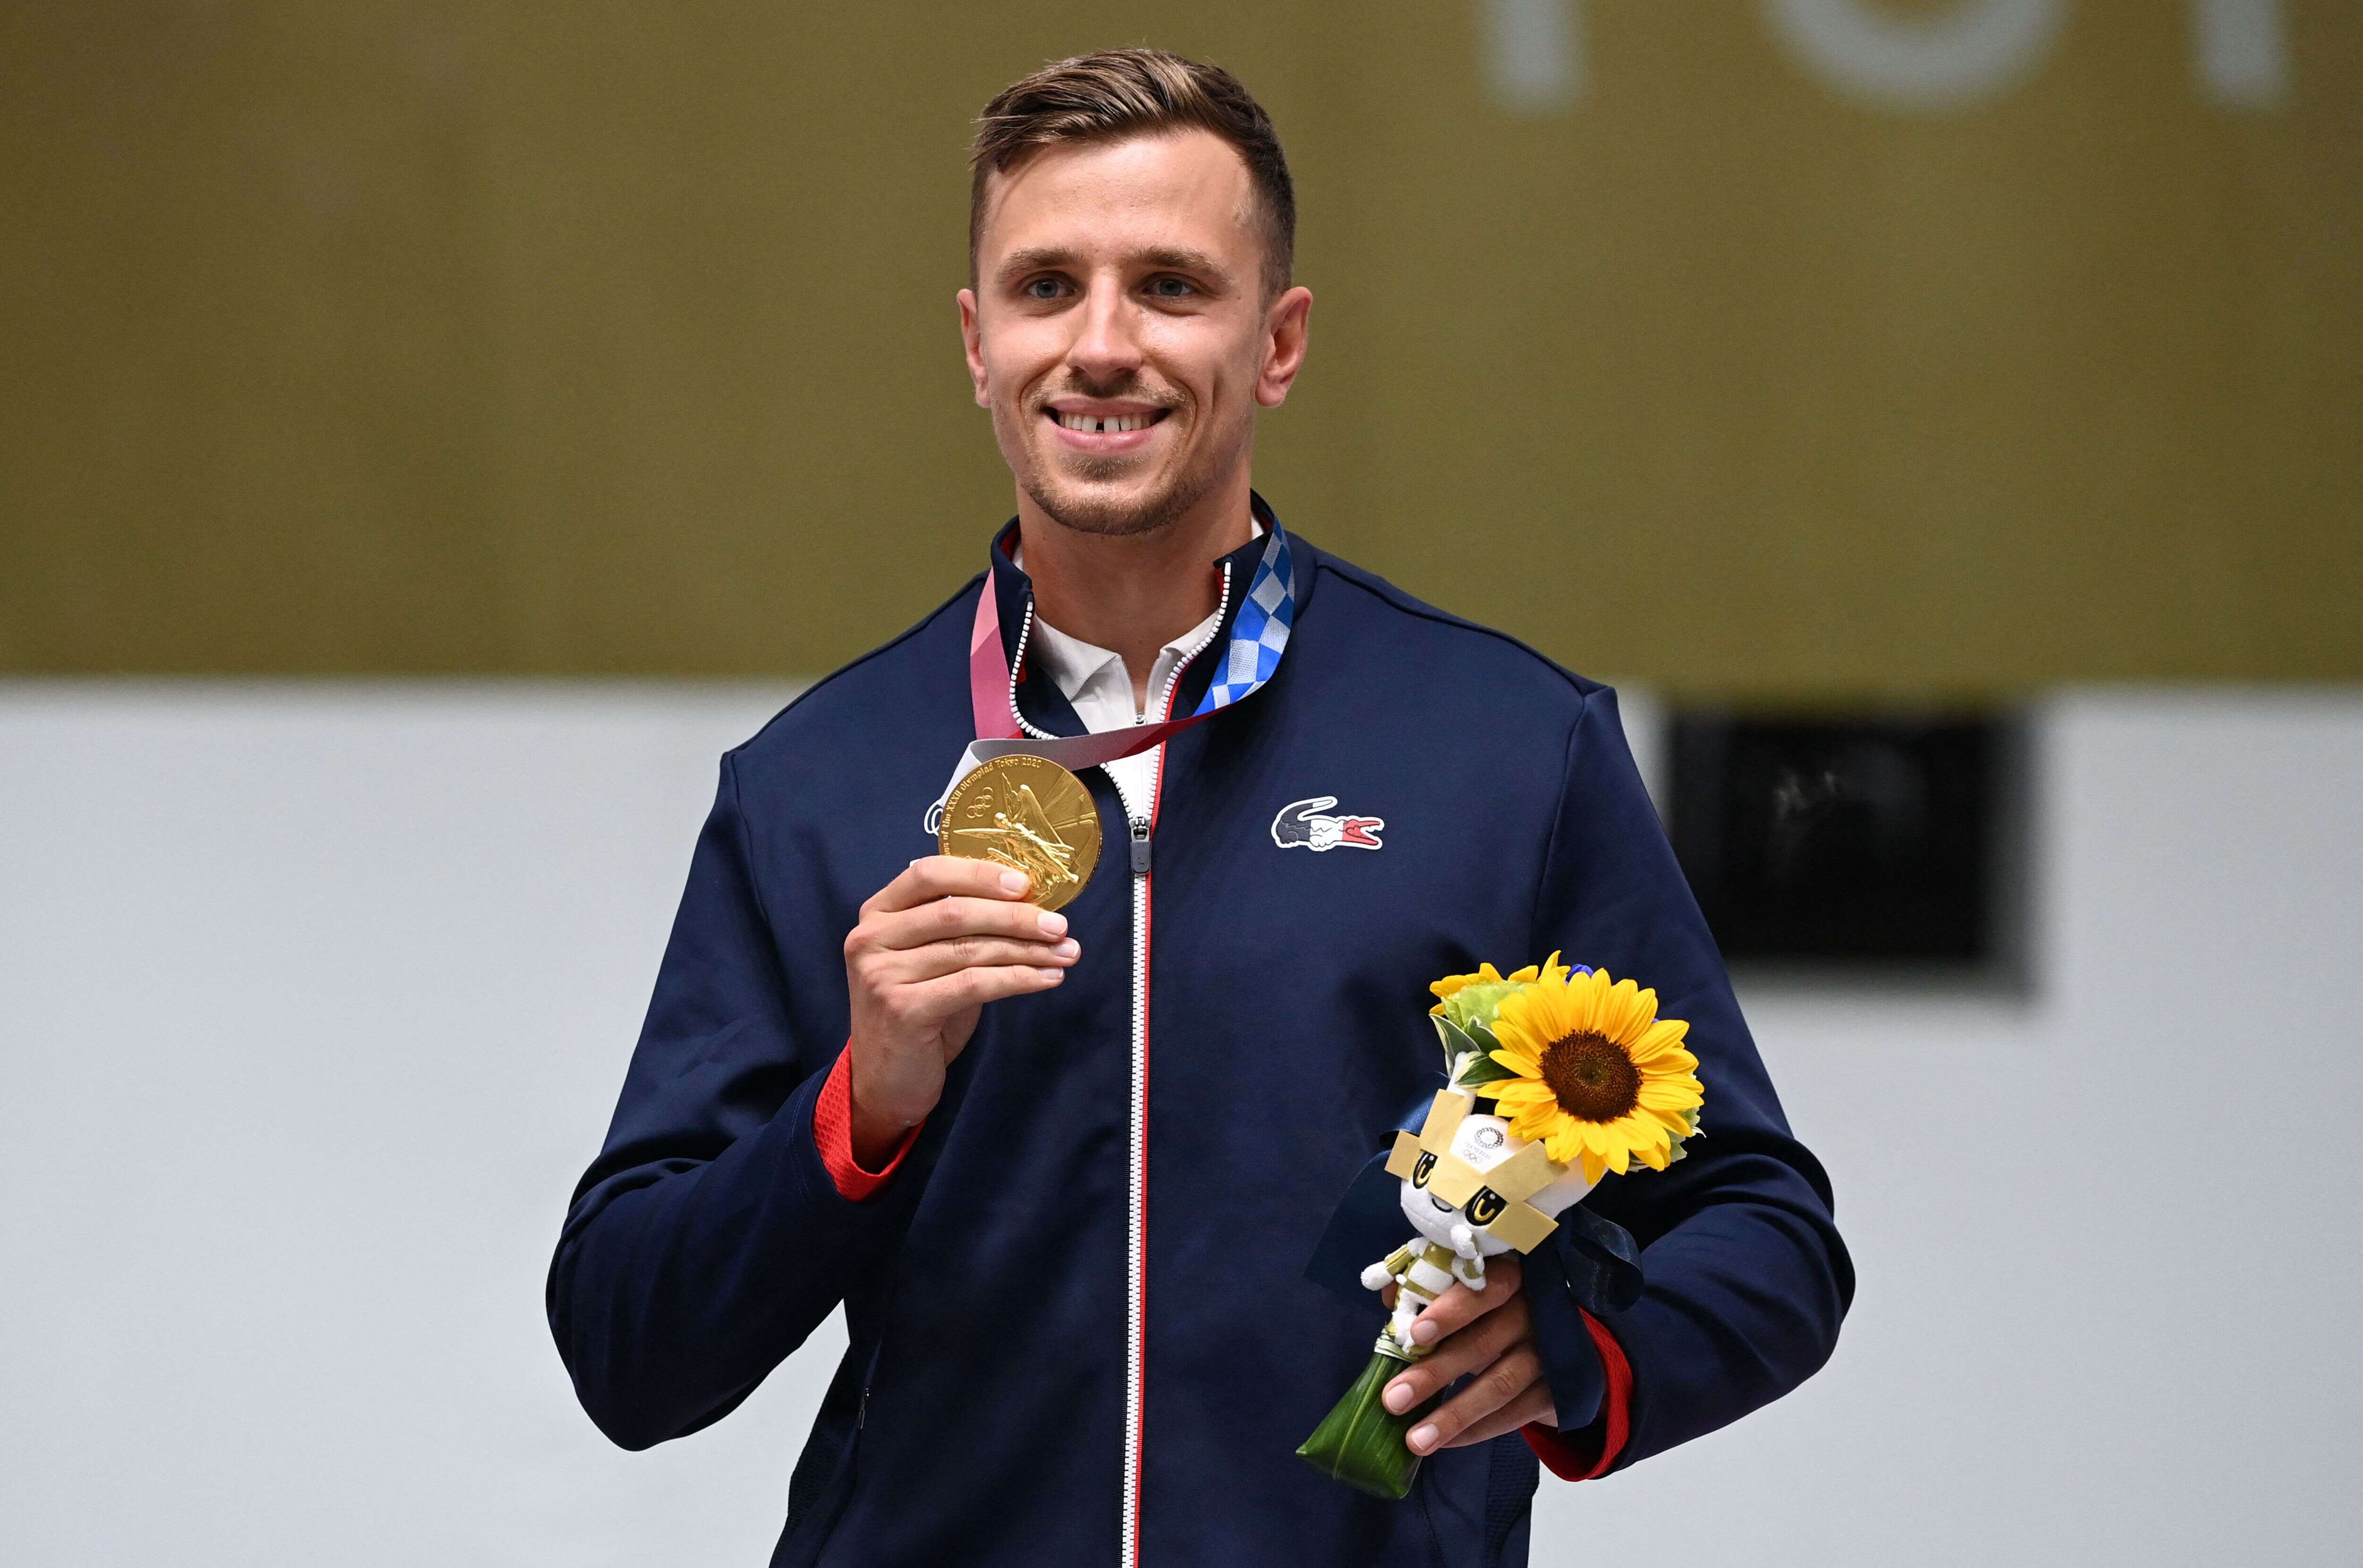 Ce lundi 2 août, le Français Jean Quiquampoix a remporté l'or olympique au pistolet de vitesse à 25 mètres. Il s'agit de la 6e médaille d'or de l'équipe de France à Tokyo.